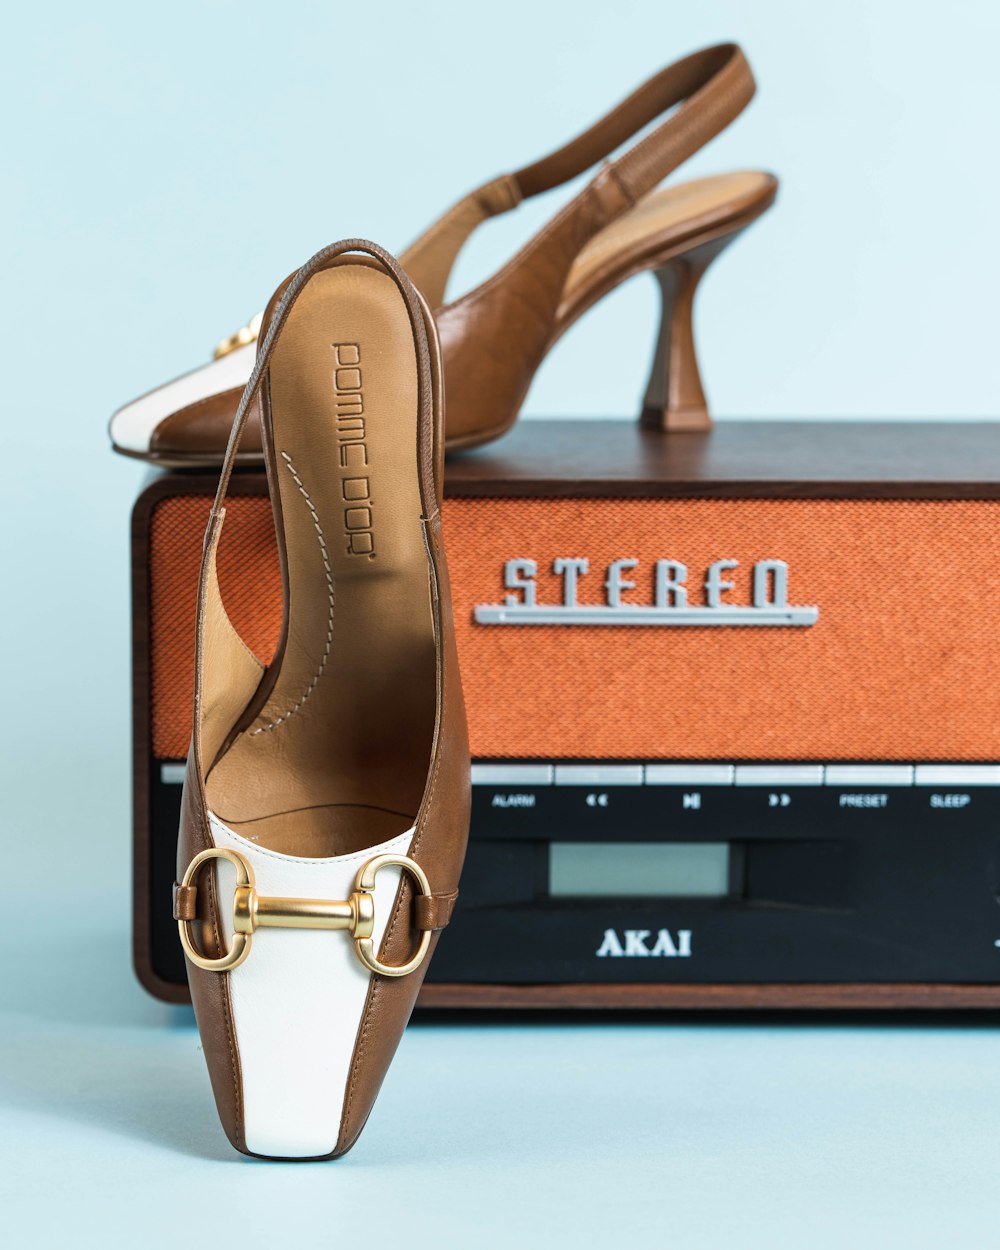 une paire de chaussures posée sur une radio